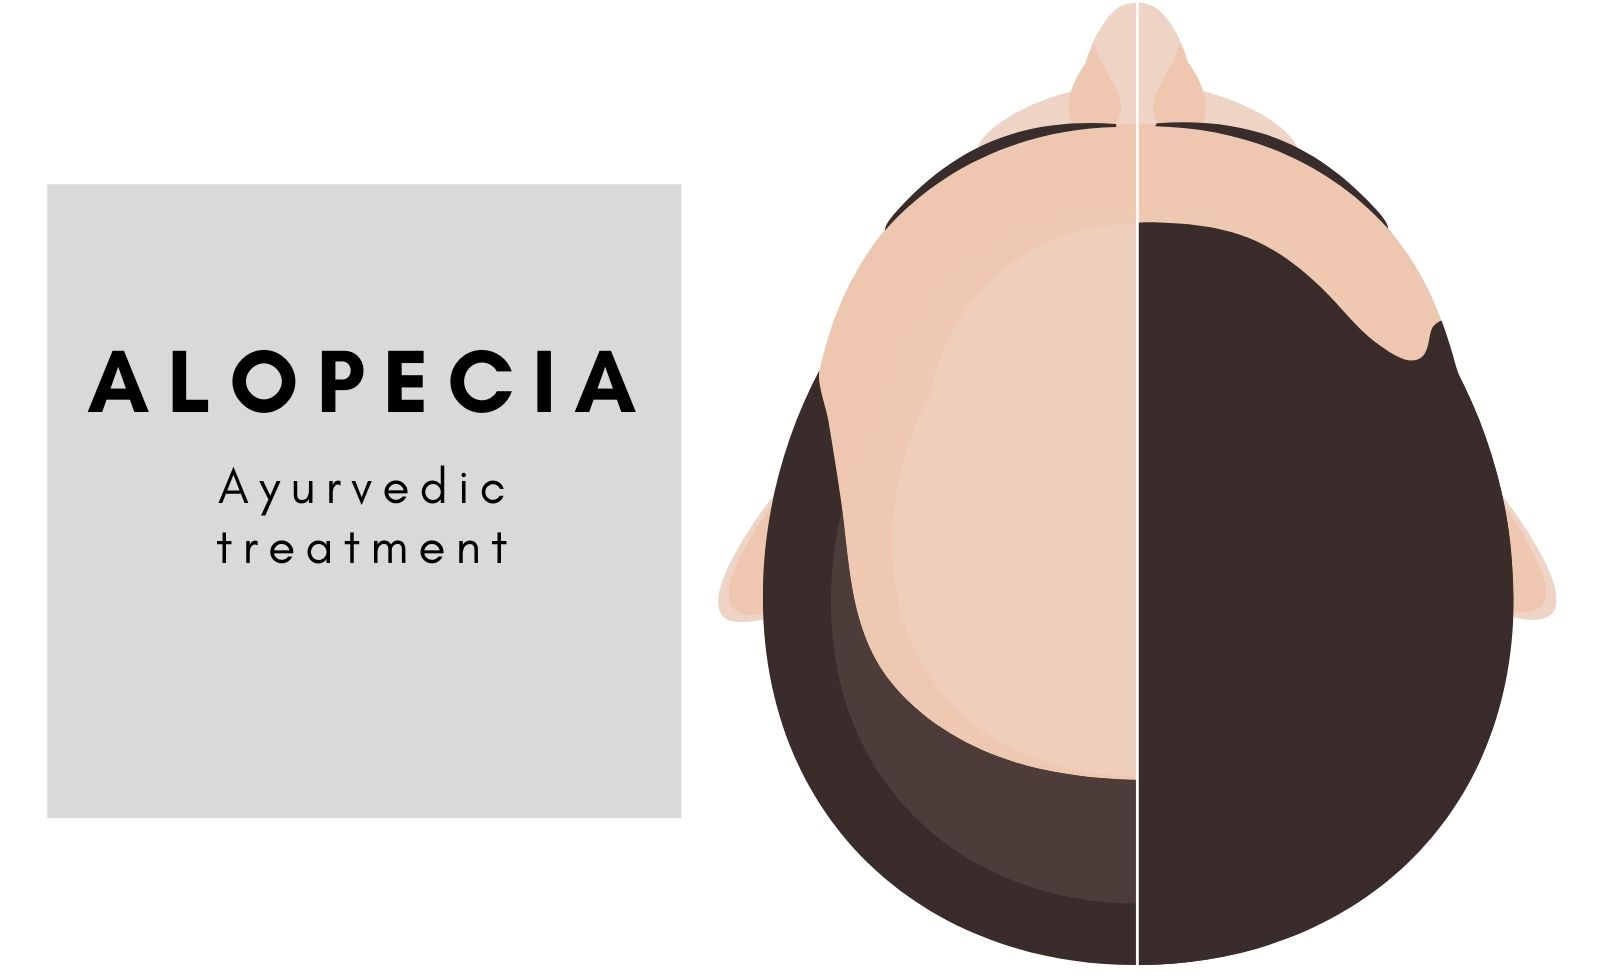 Ayurvedic treatment for Alopecia